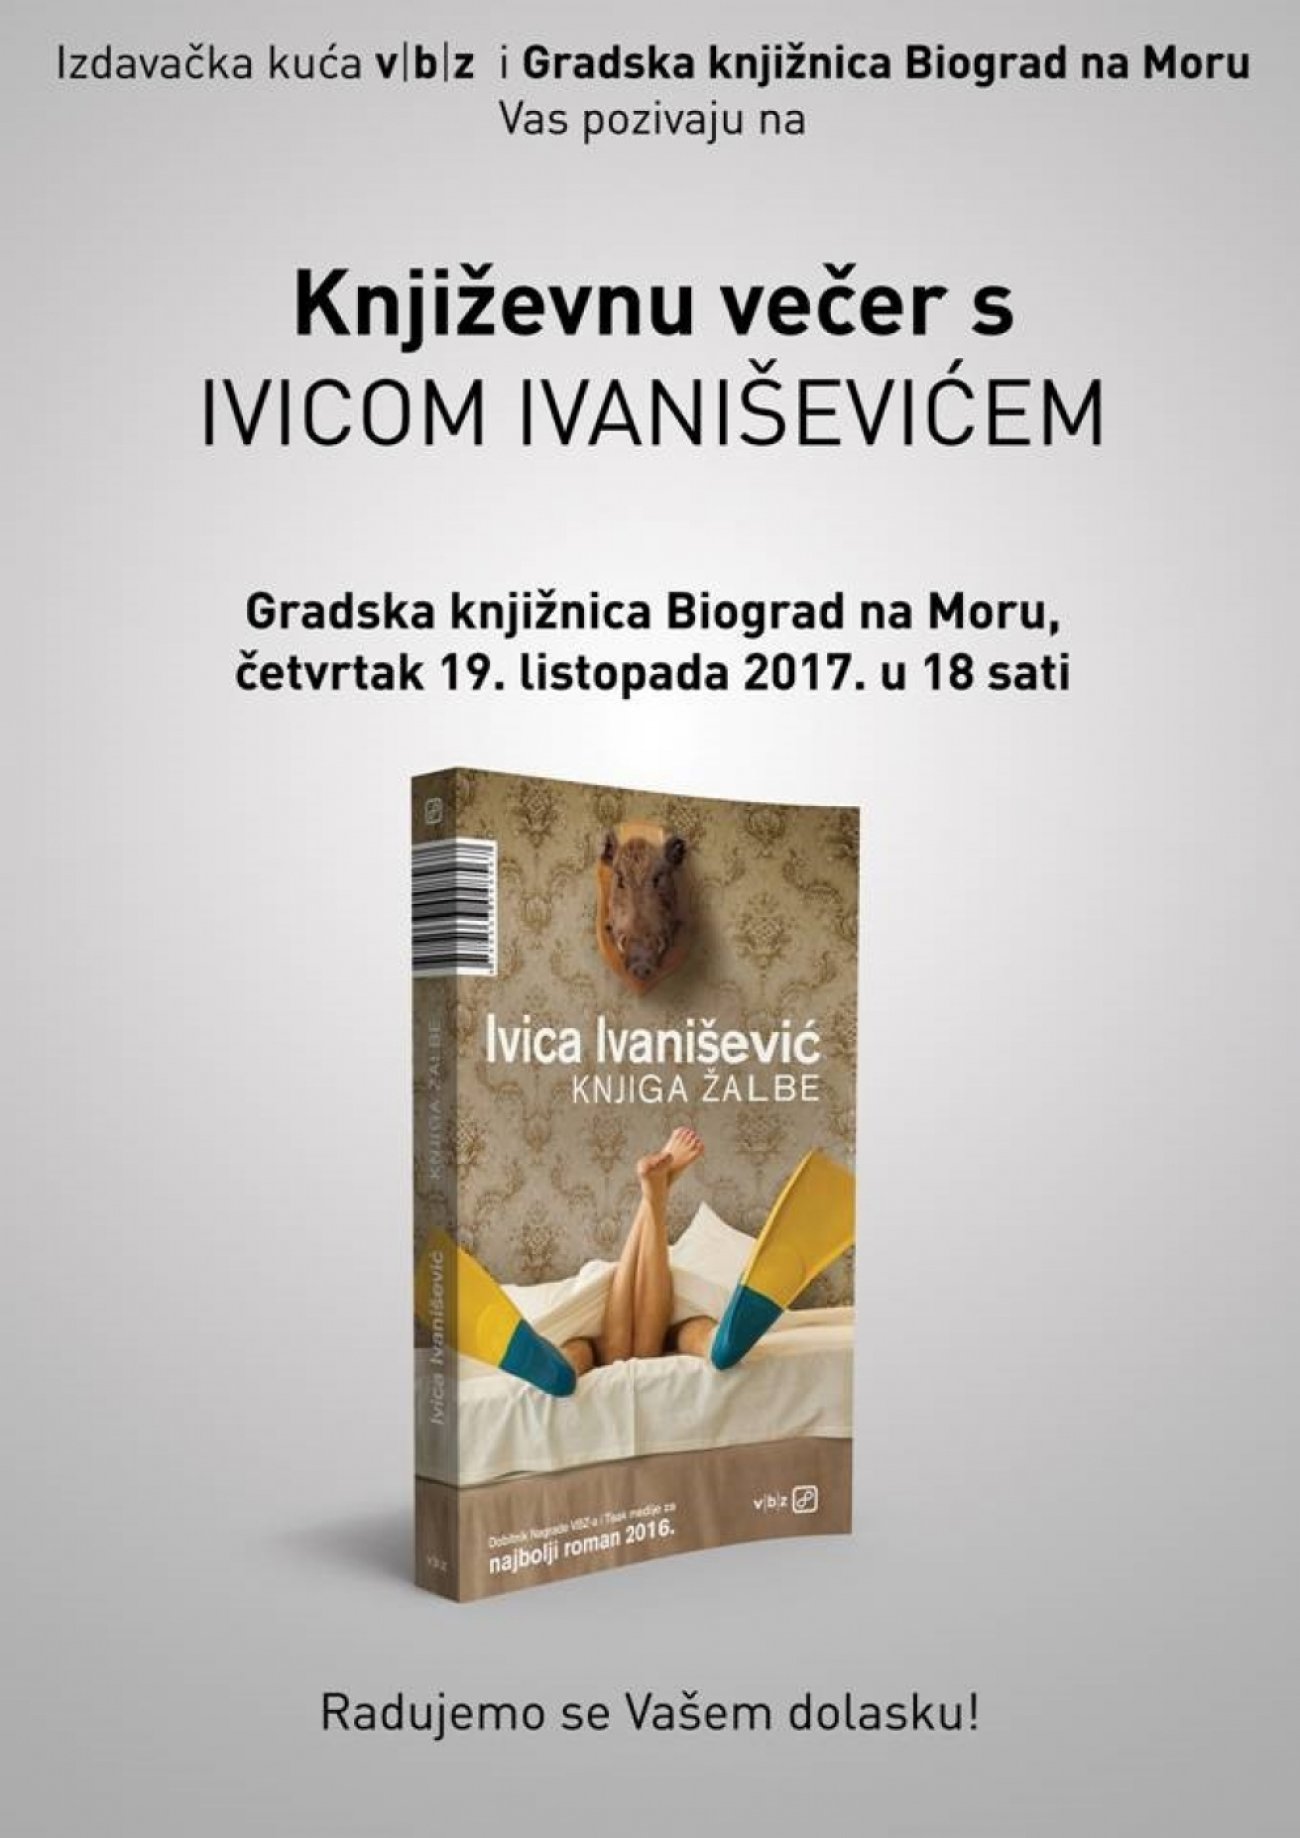 Književna večer s nagrađivanim književnikom Ivicom Ivaniševićem